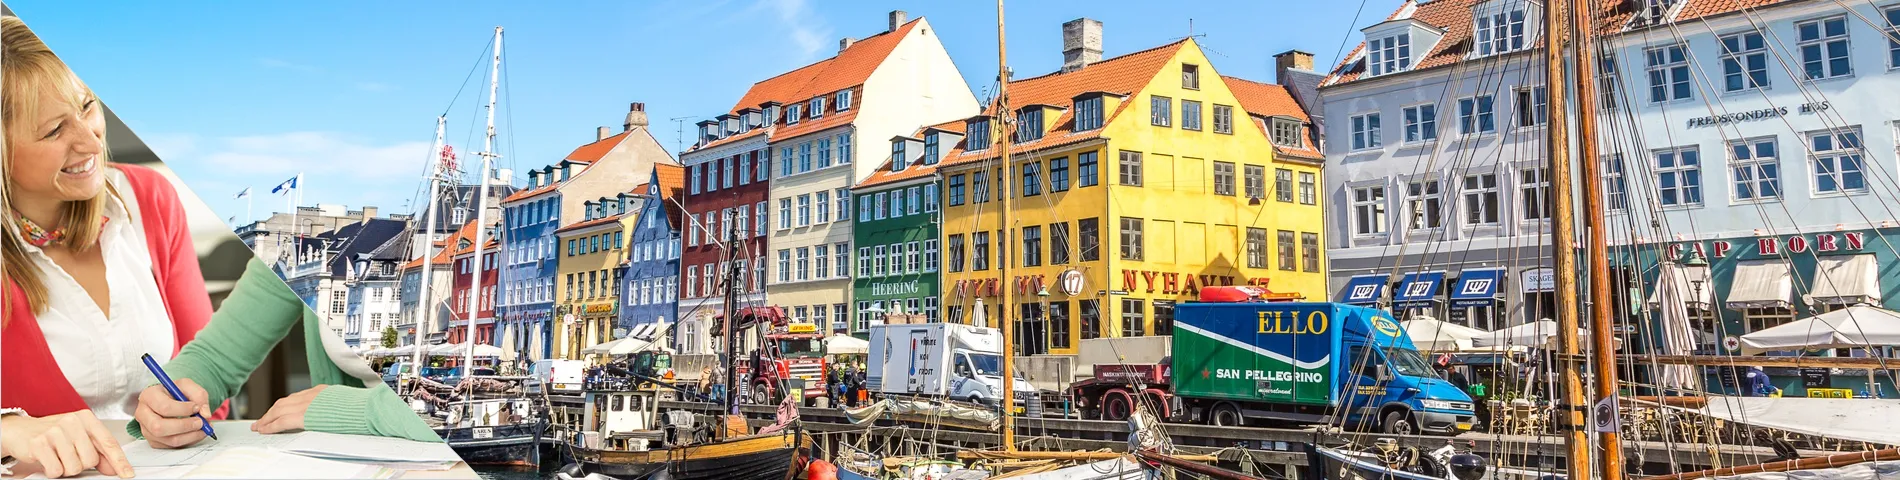 Koppenhága - Tanulj és lakj a tanárod otthonában